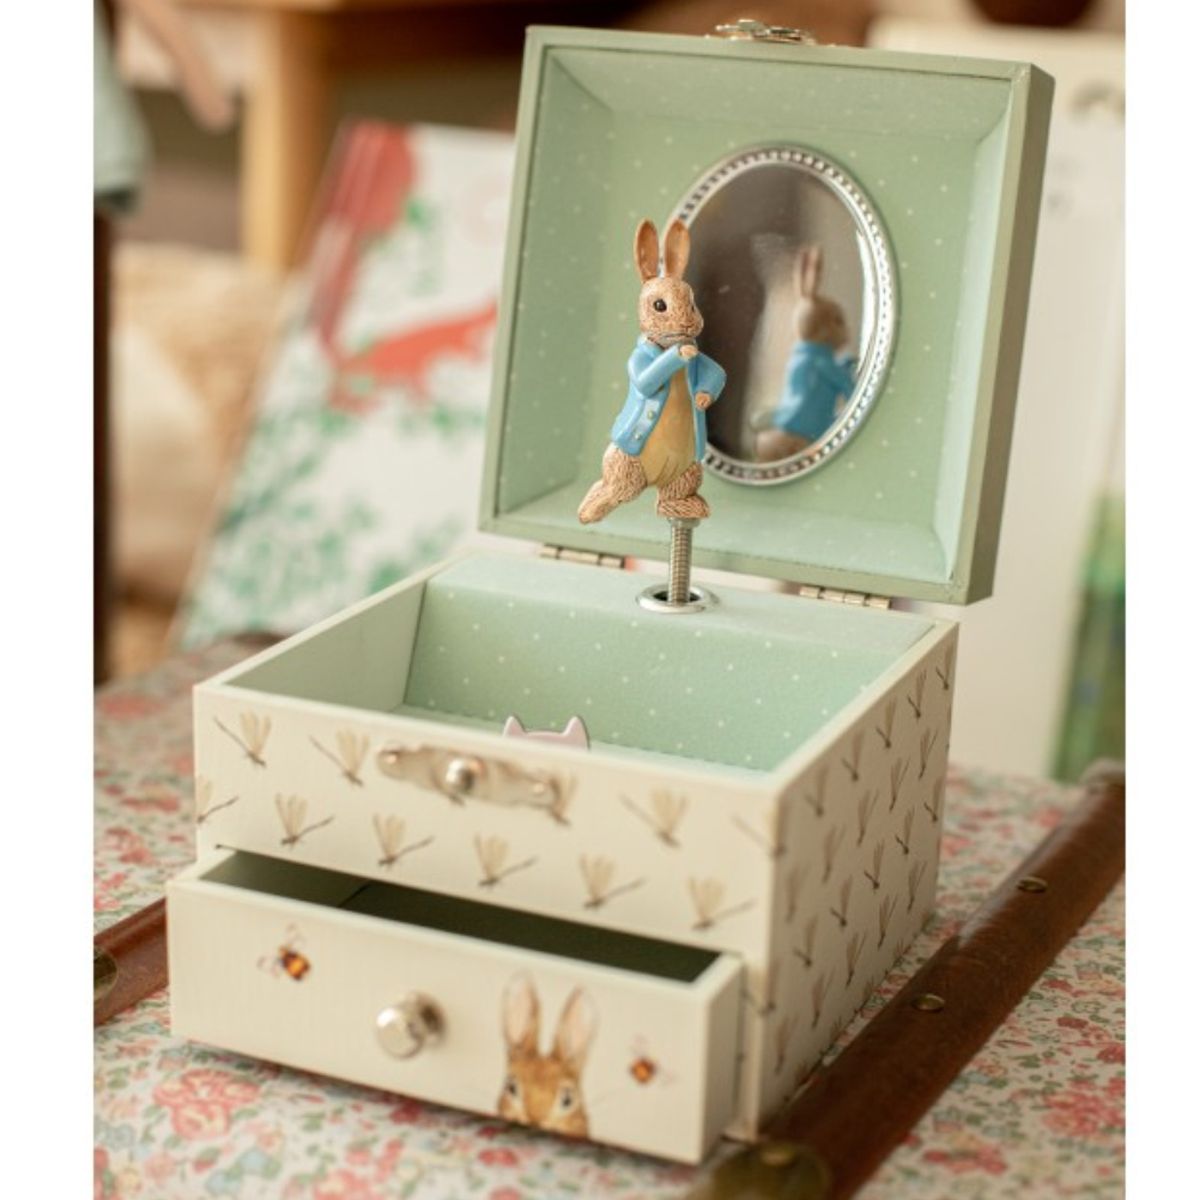 Peter Rabbit musical jewelry box